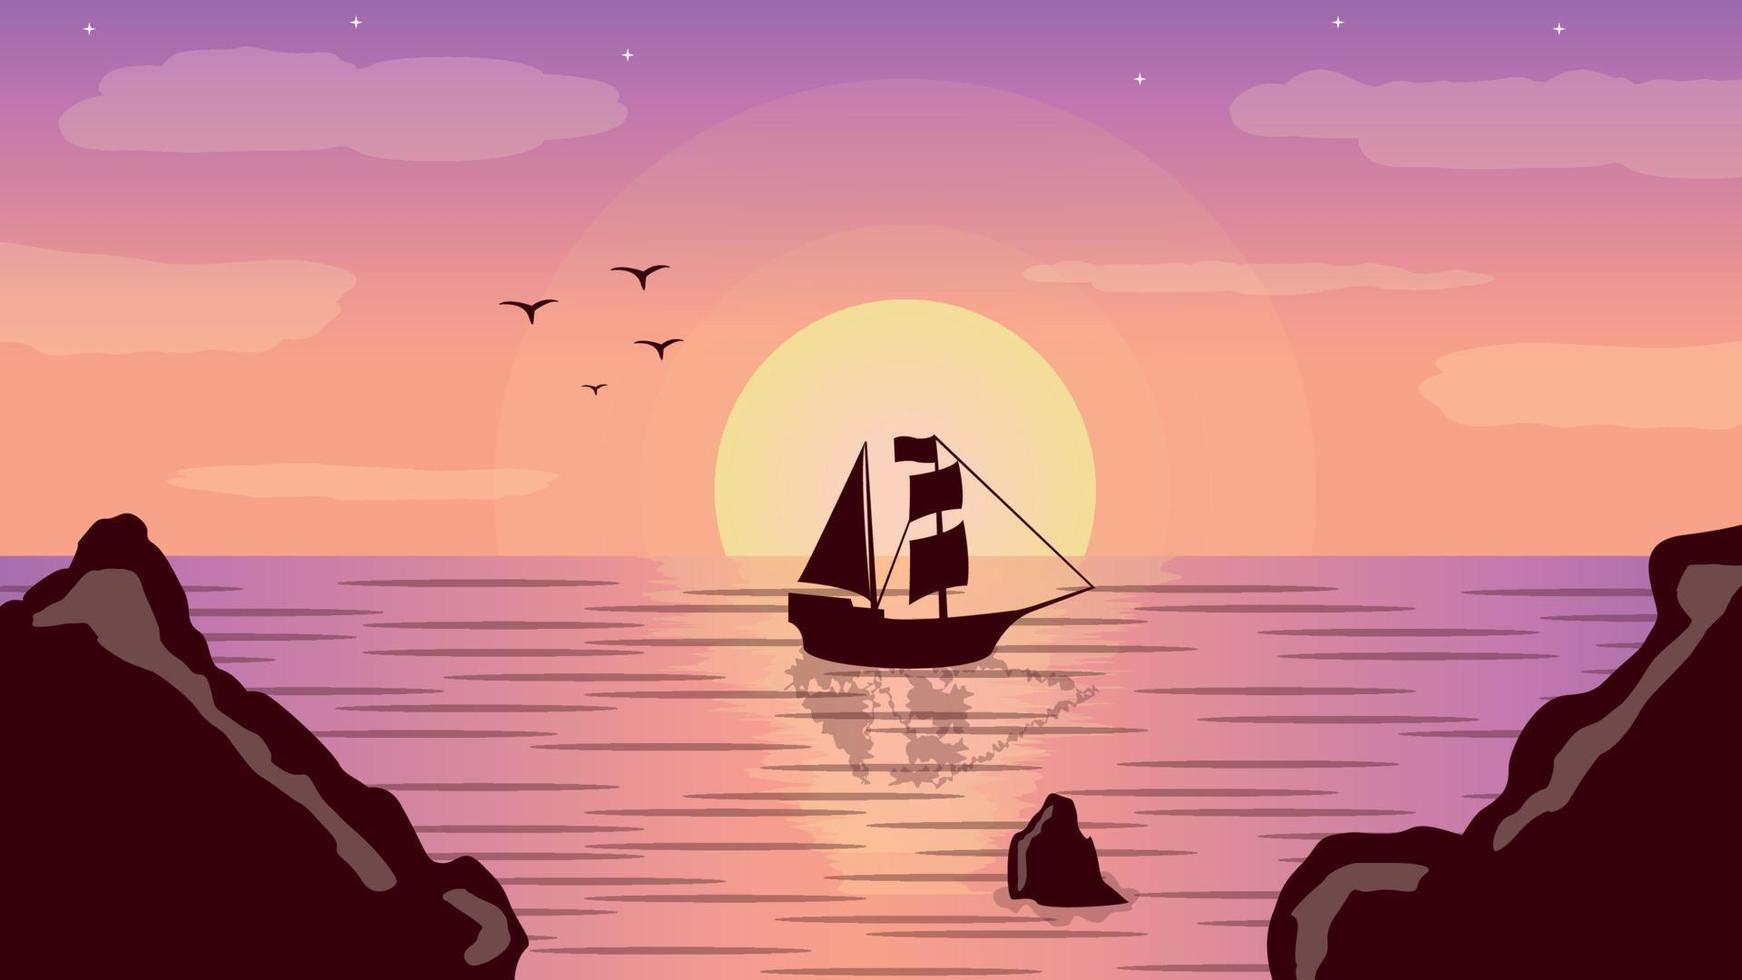 conception d'illustration de paysage d'un bateau sur l'océan avec un beau coucher de soleil vecteur